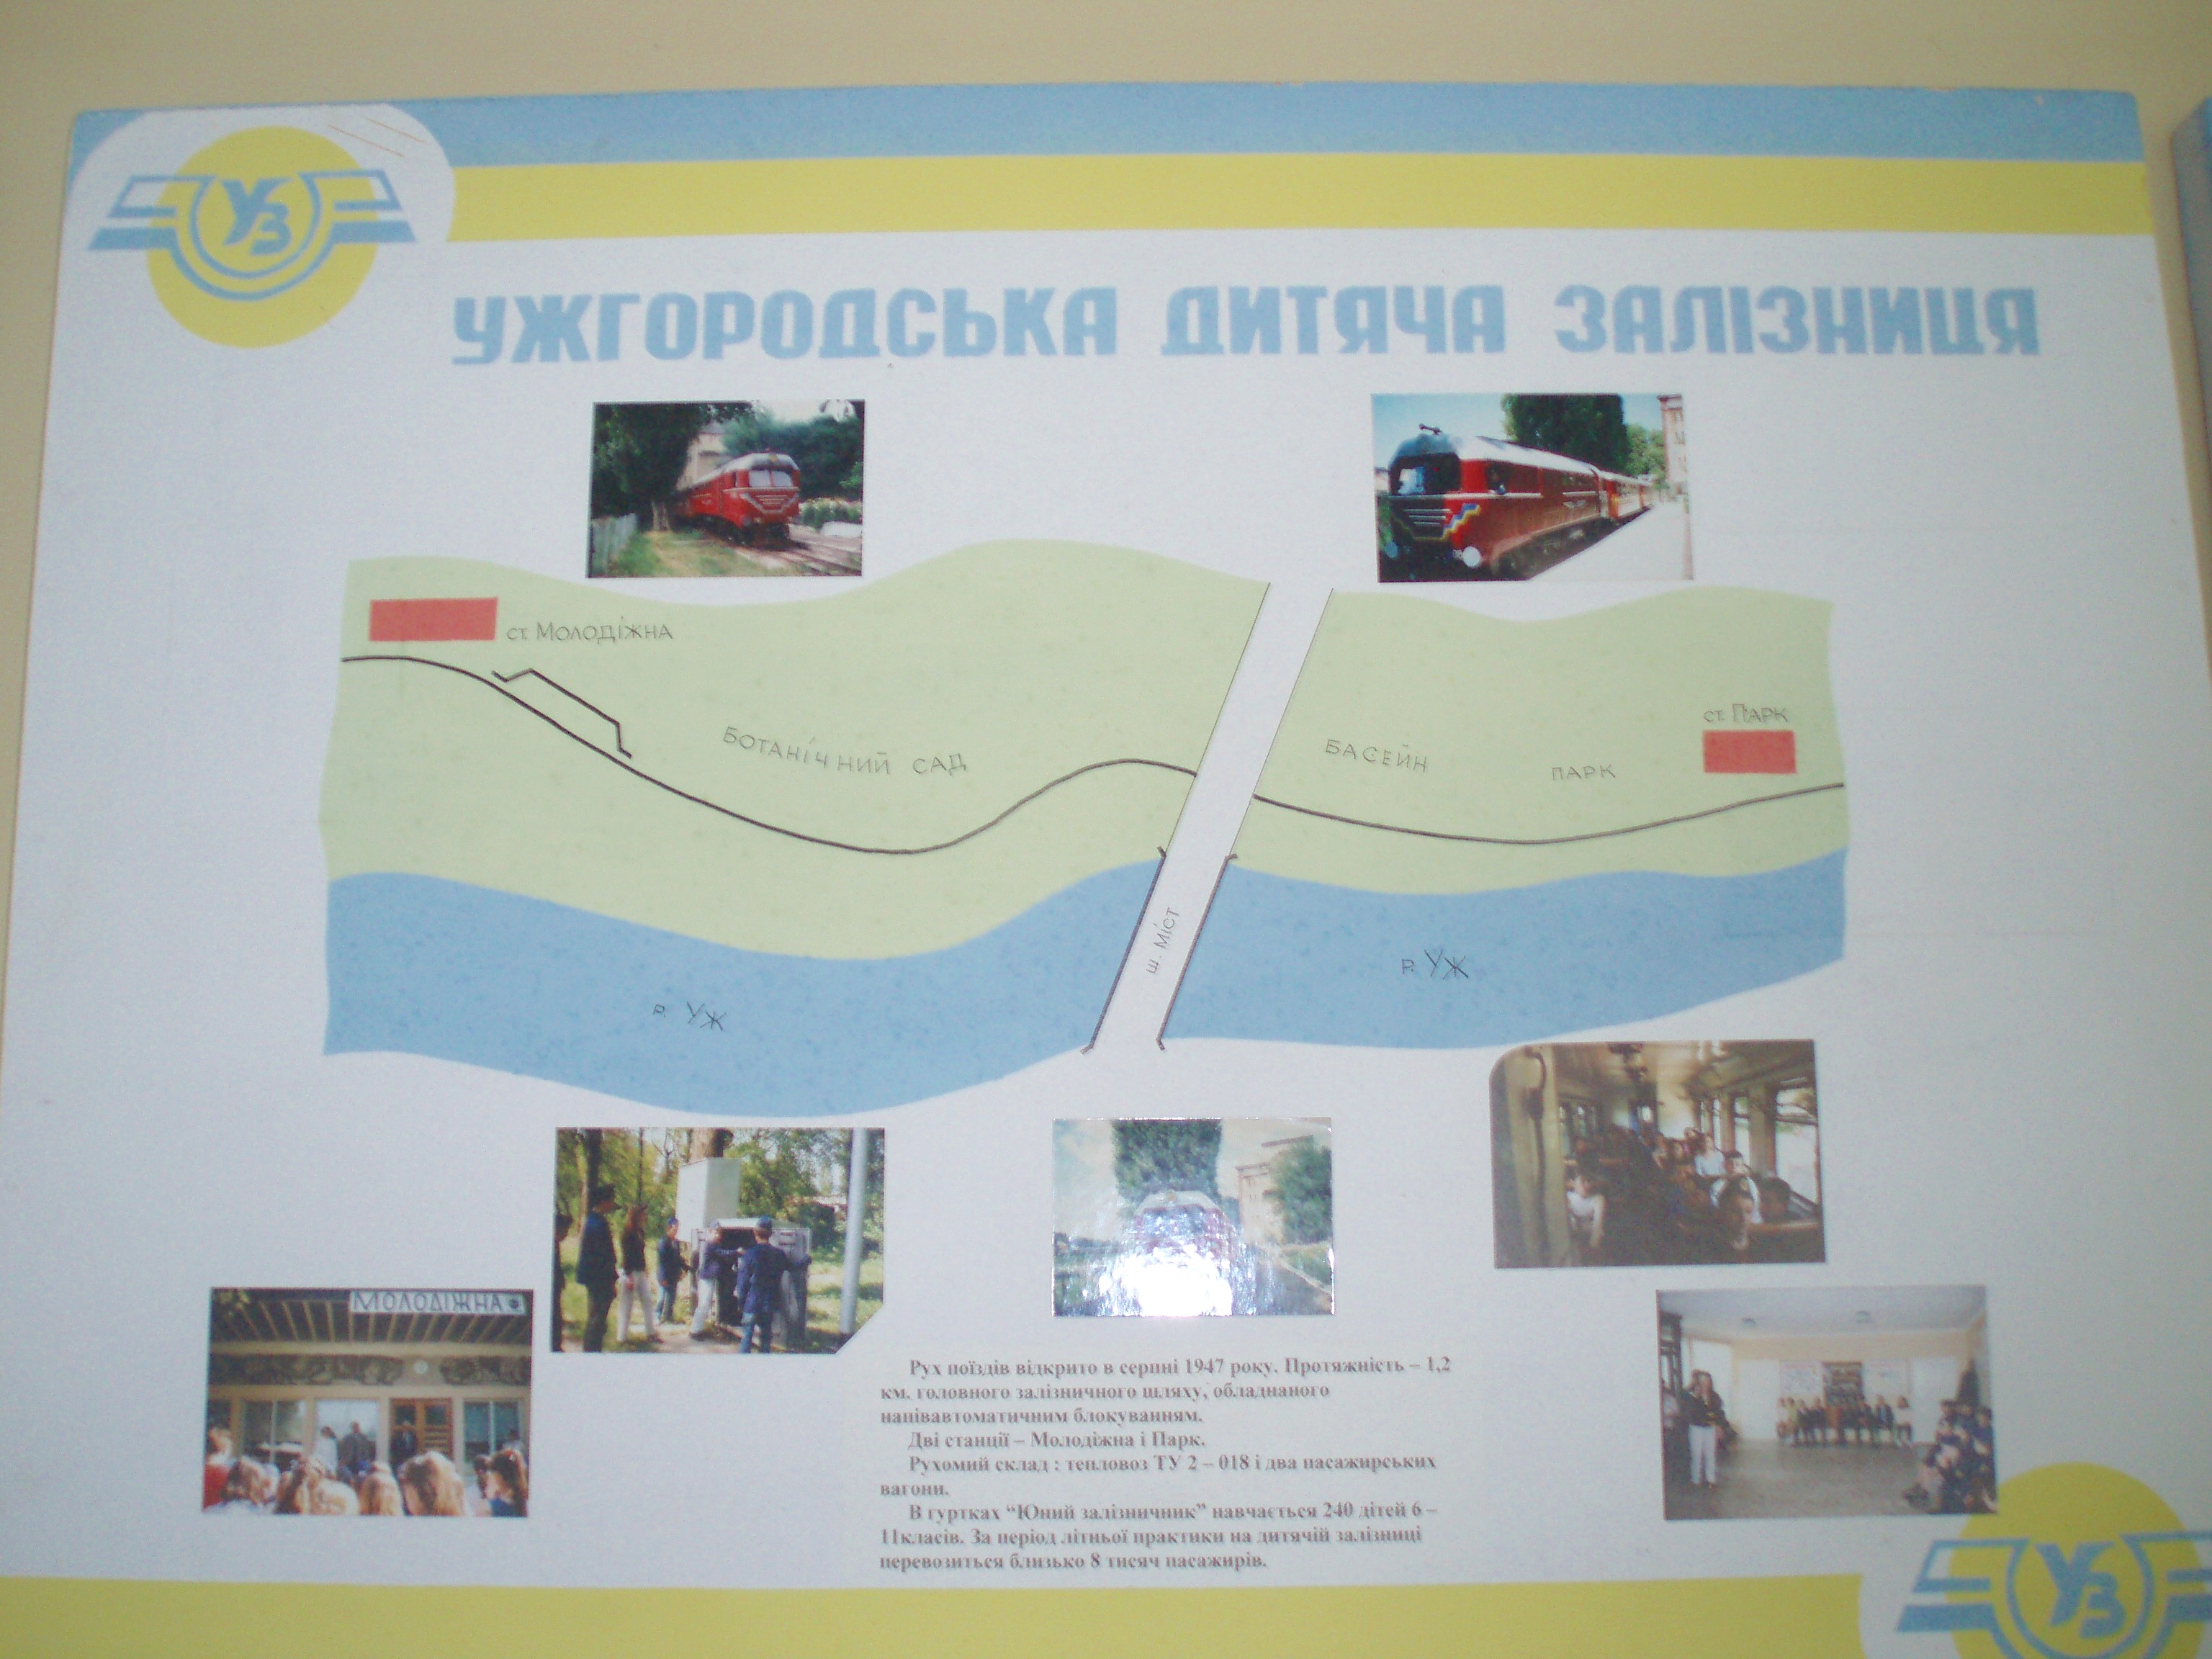 Ужгородская детская железная дорога  —  фотографии, сделанные в 2007 году (часть 1)